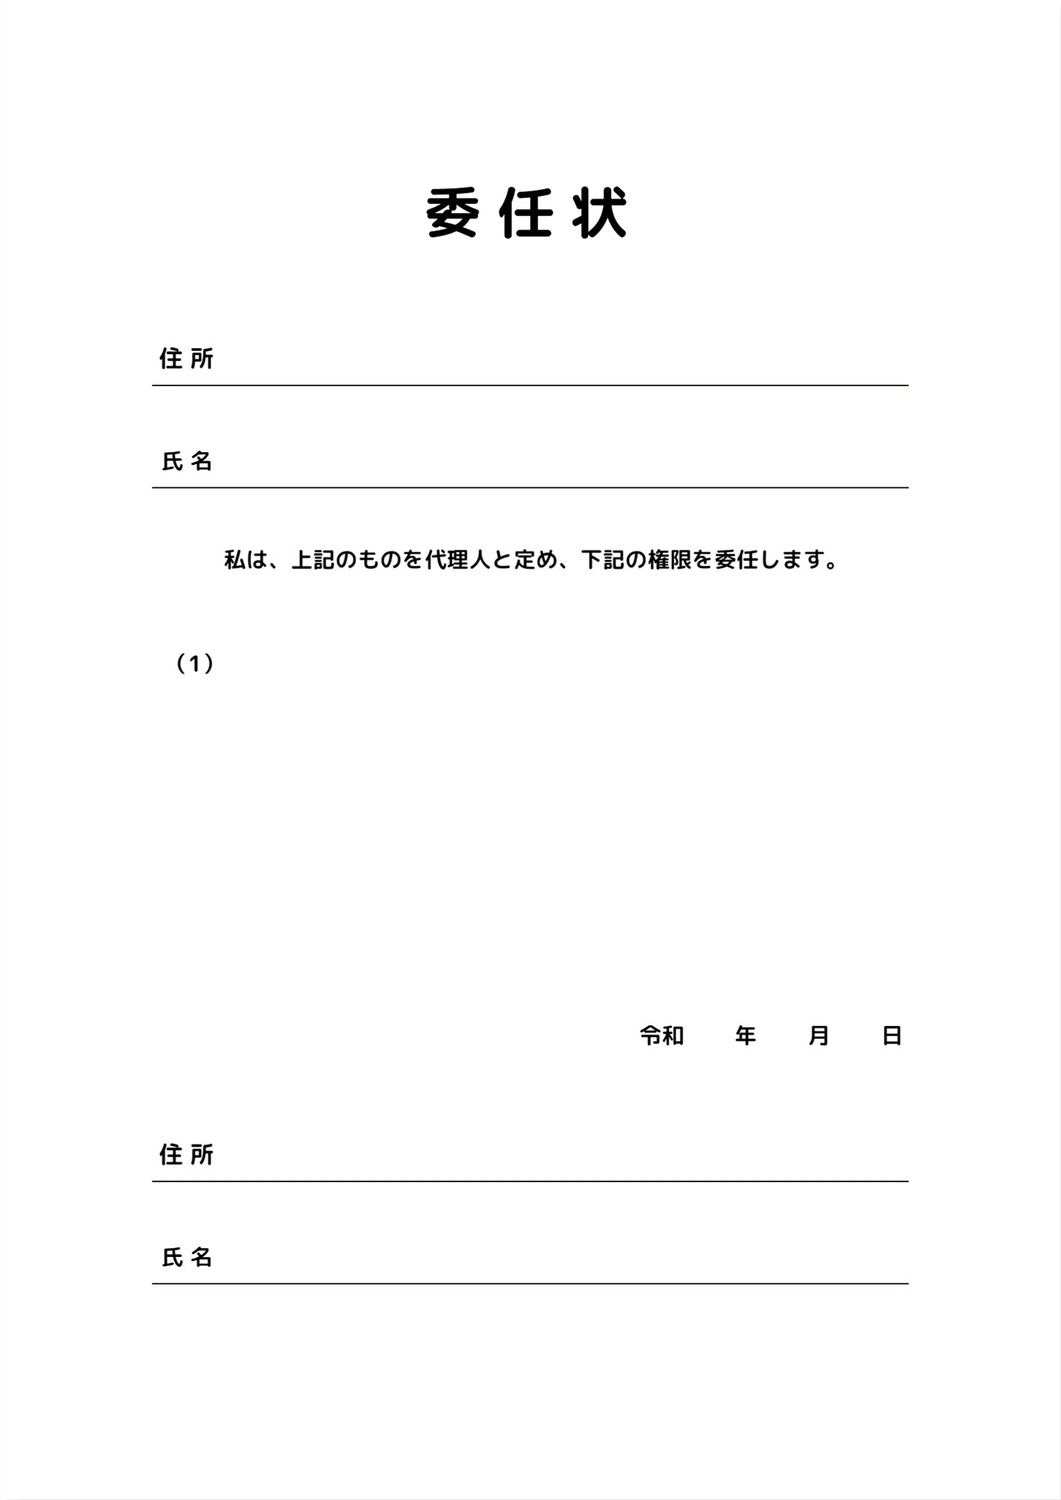 委任状テンプレート, white background, Letter of appointment, Easy to understand, A4 template